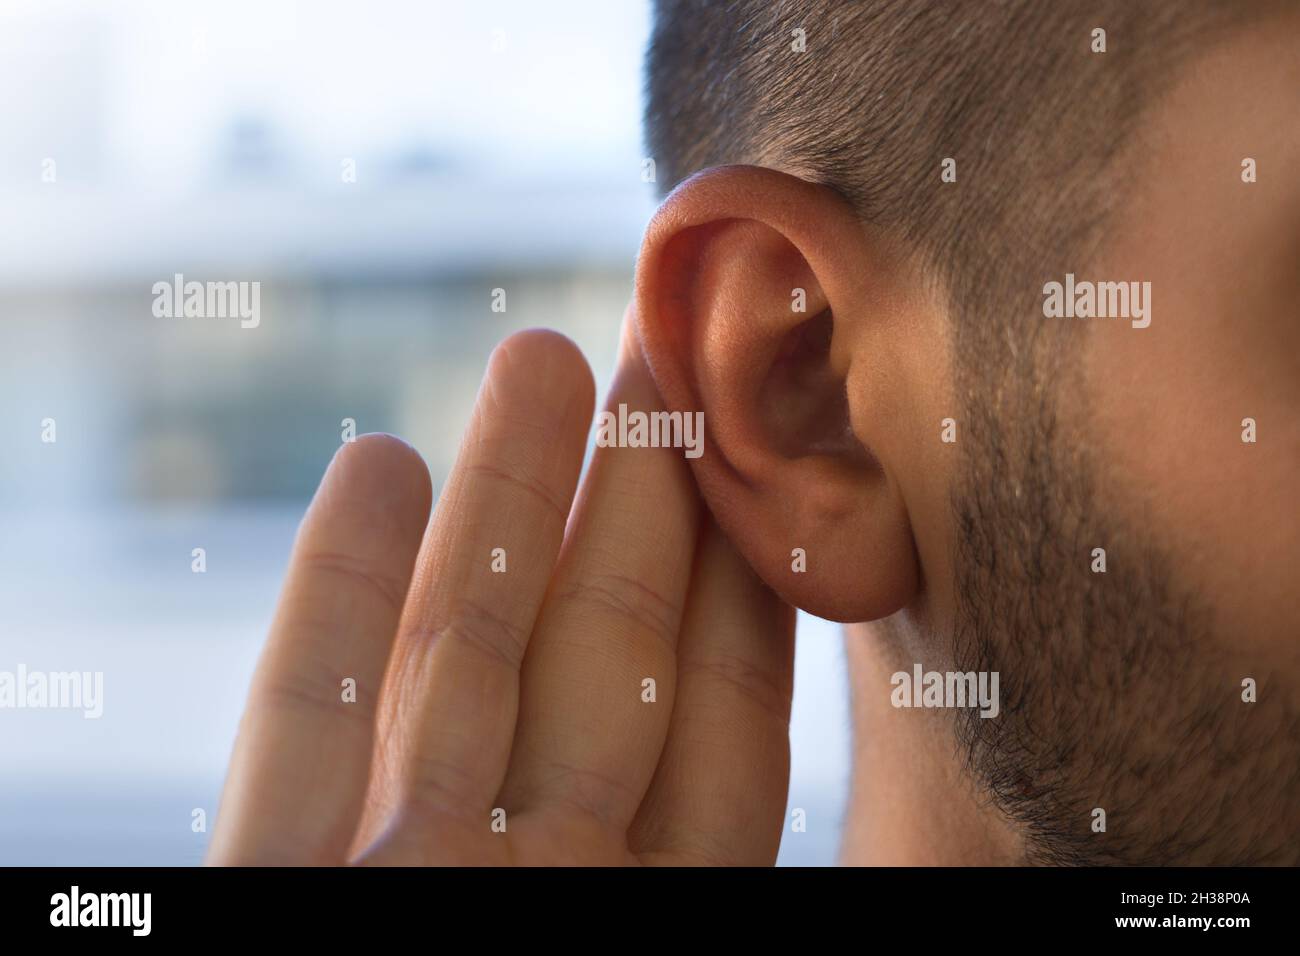 Hombre joven con problemas de audición, pérdida de audición o dificultad de audición Foto de stock